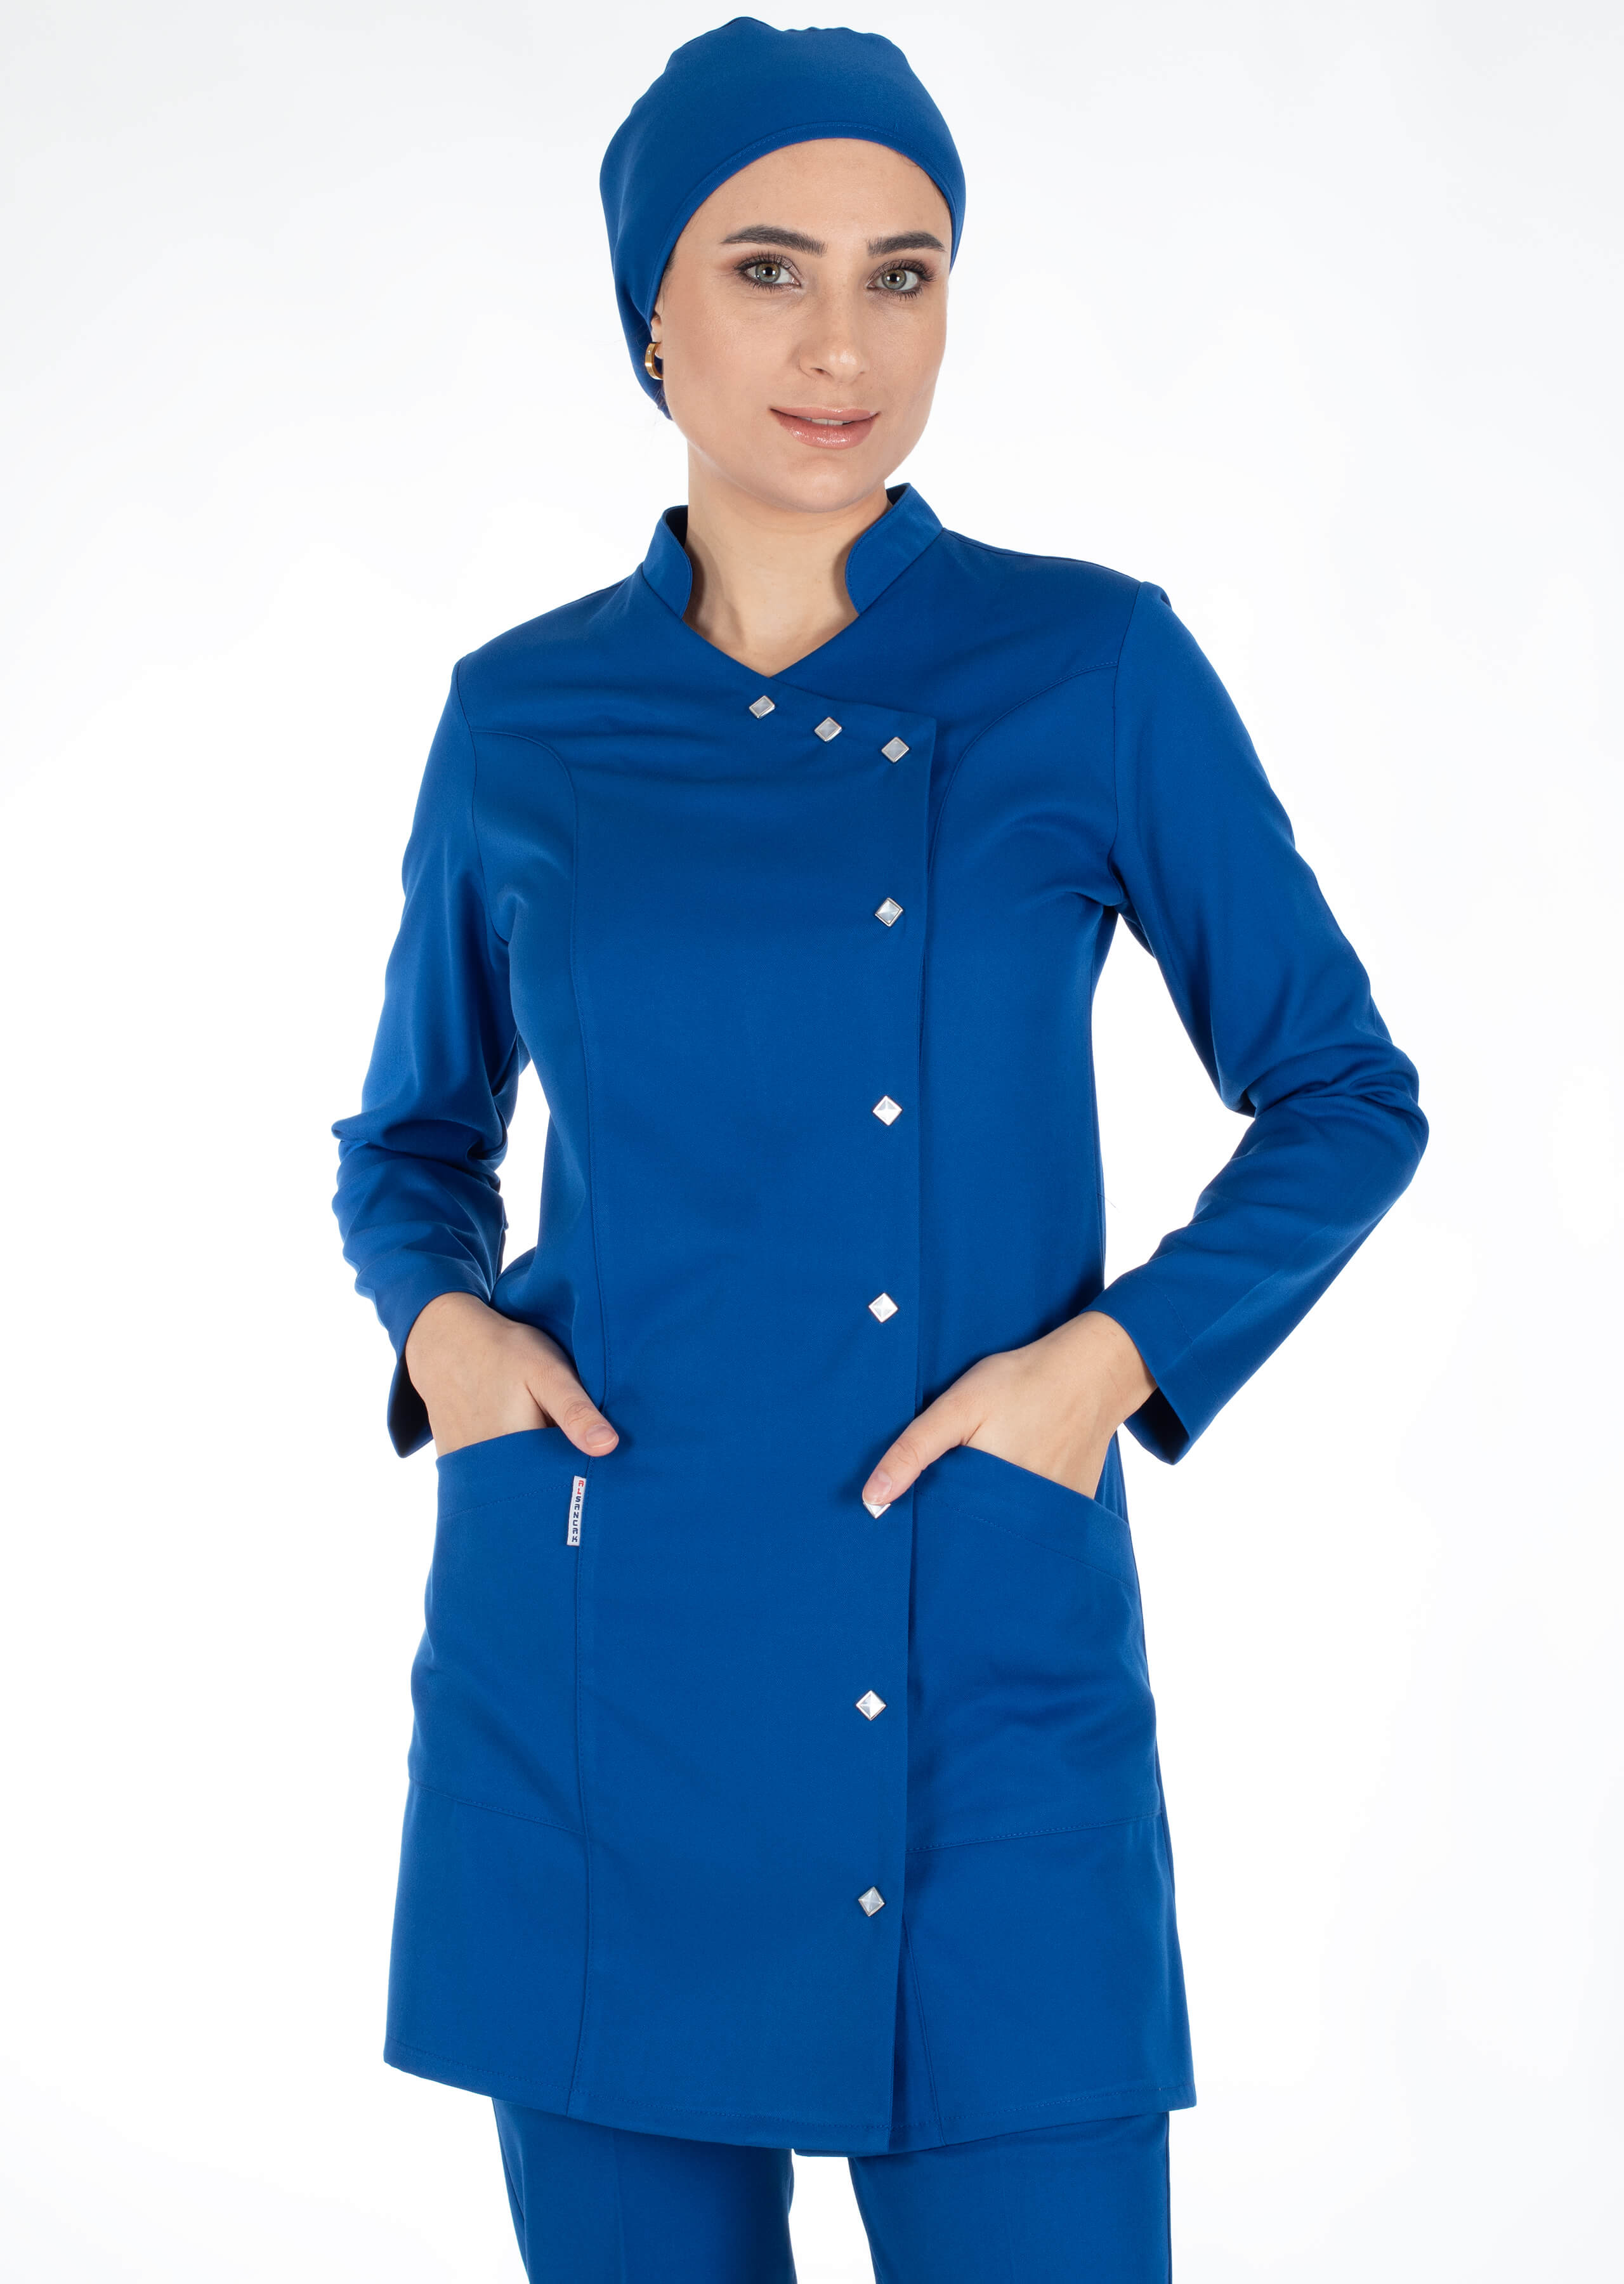 Luxe Model Saks Mavi Likralı Tesettür Hemşire Doktor Forması Takımı